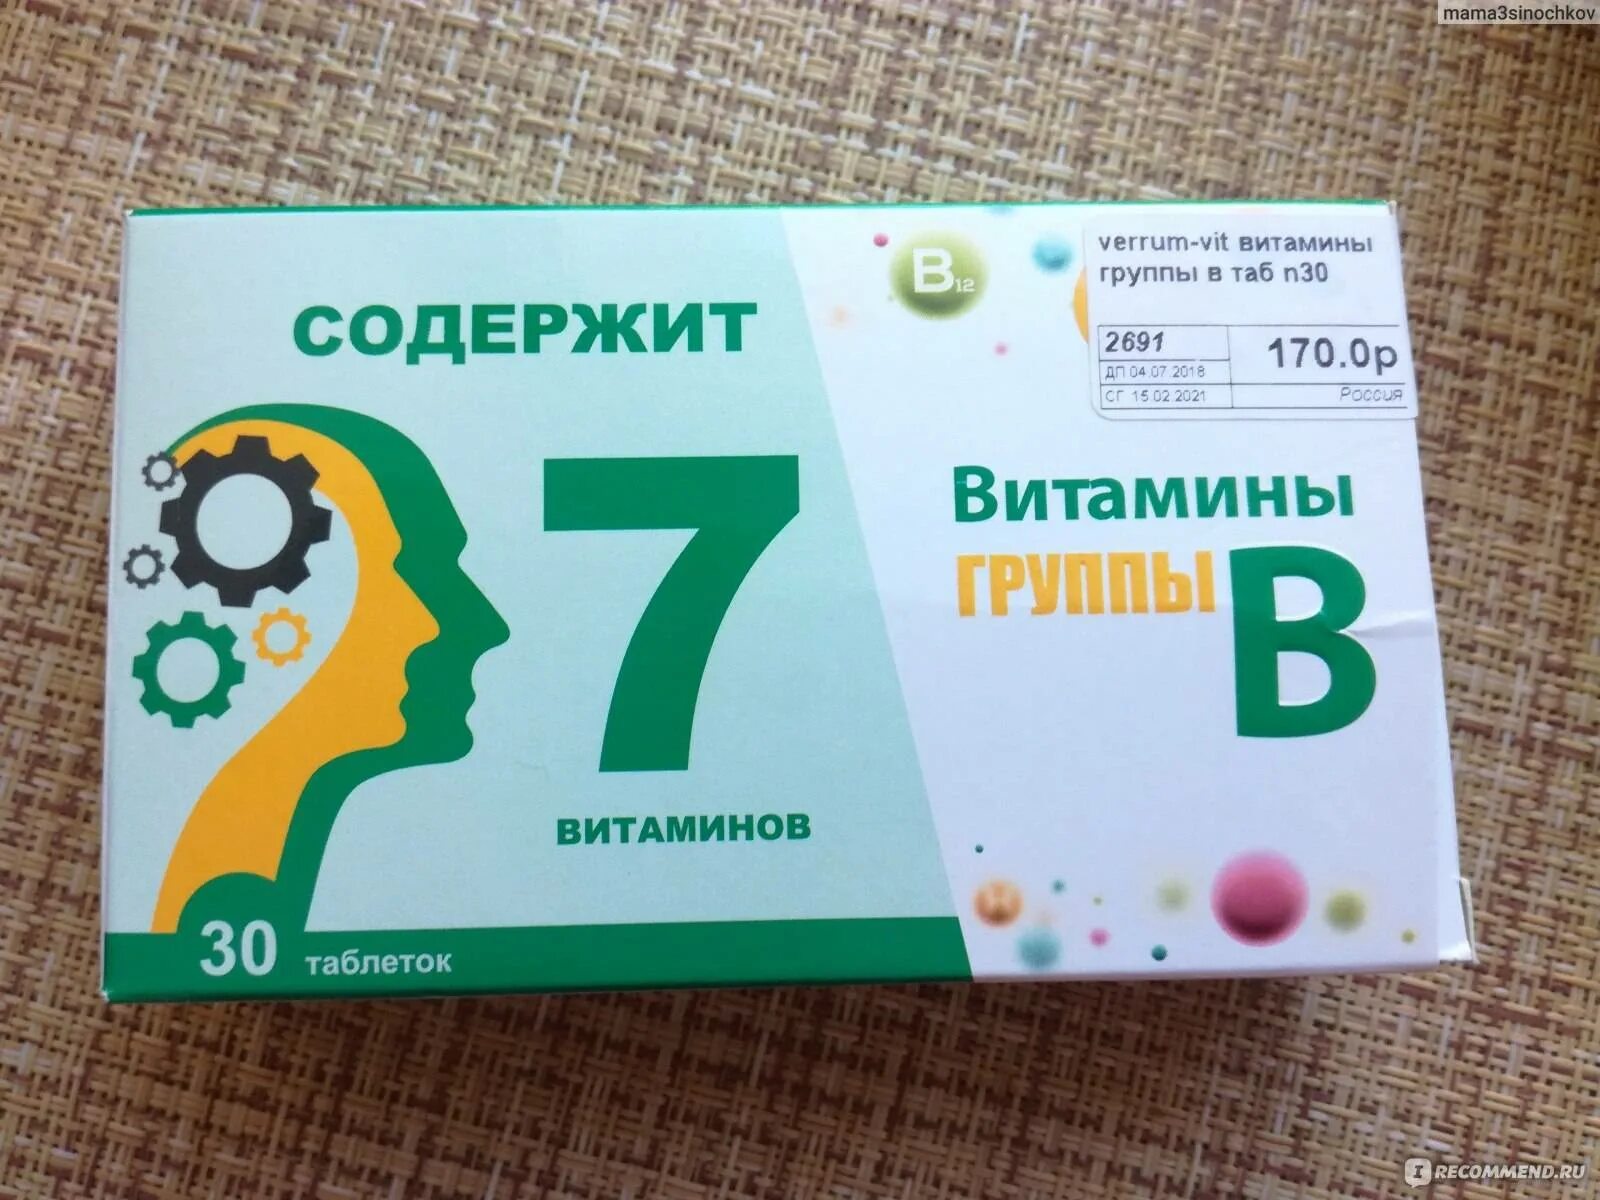 Комплекс витаминов в6 в12. Витаминный комплекс в12 в6. Комплекс витаминов в2 в6 в12. Витаминный комплекс в6 в9 в12. Витамины б1 б6 б12 в таблетках.